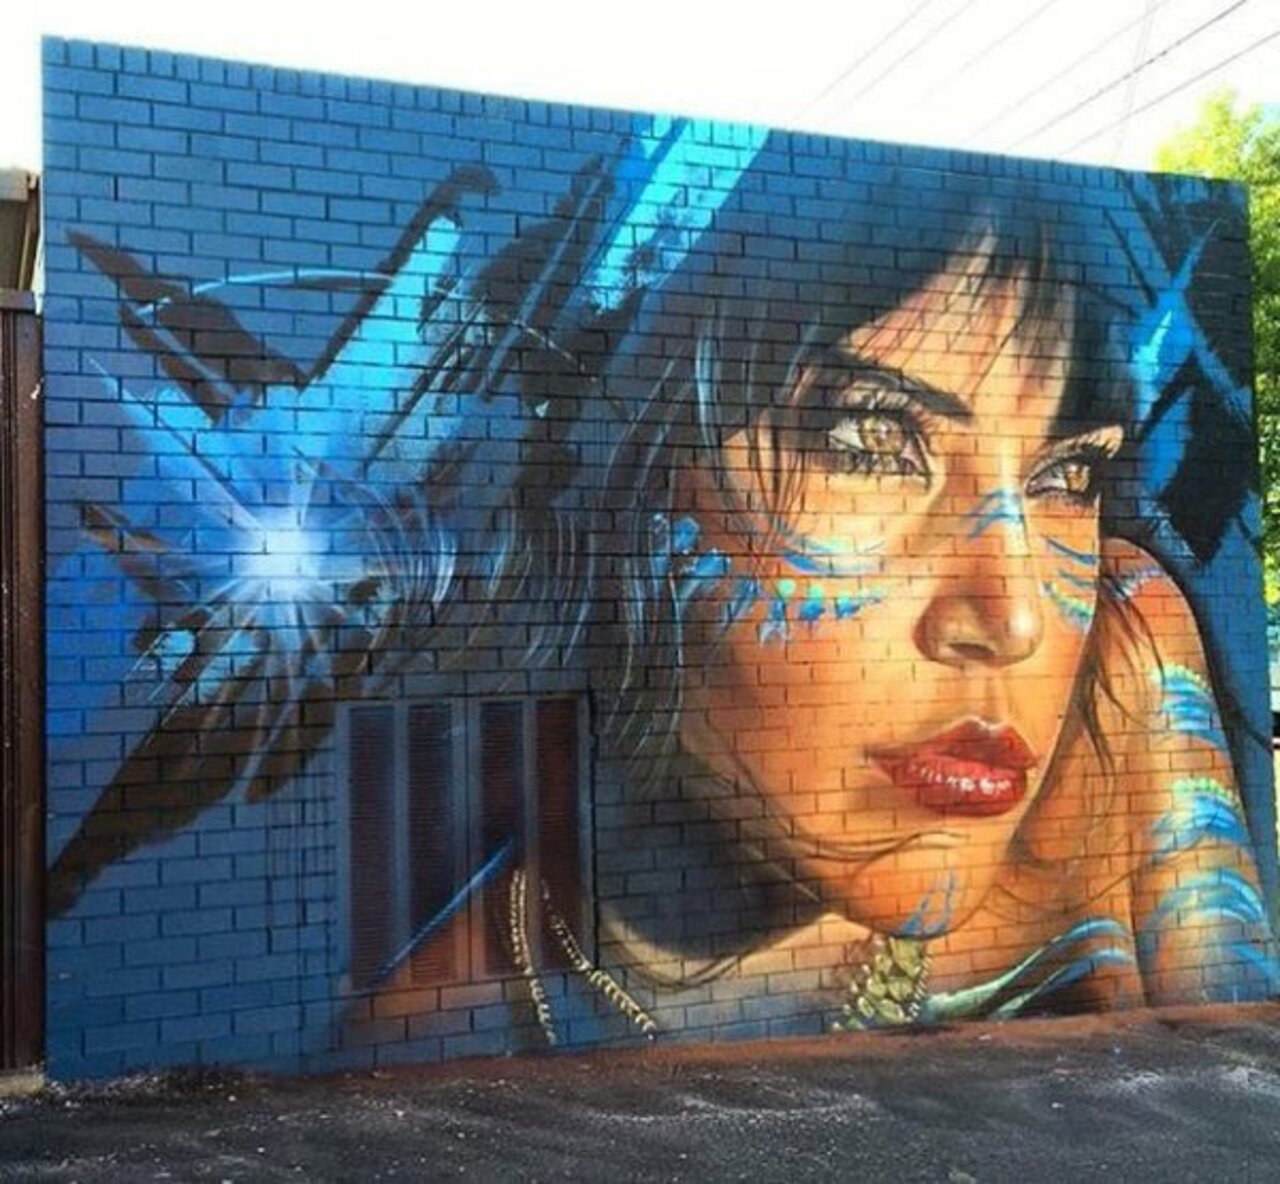 Mural by Adnate, #Melbourne #Australia #Streetart #urbanart #graffiti #mural #art https://t.co/s3G7kkOBld